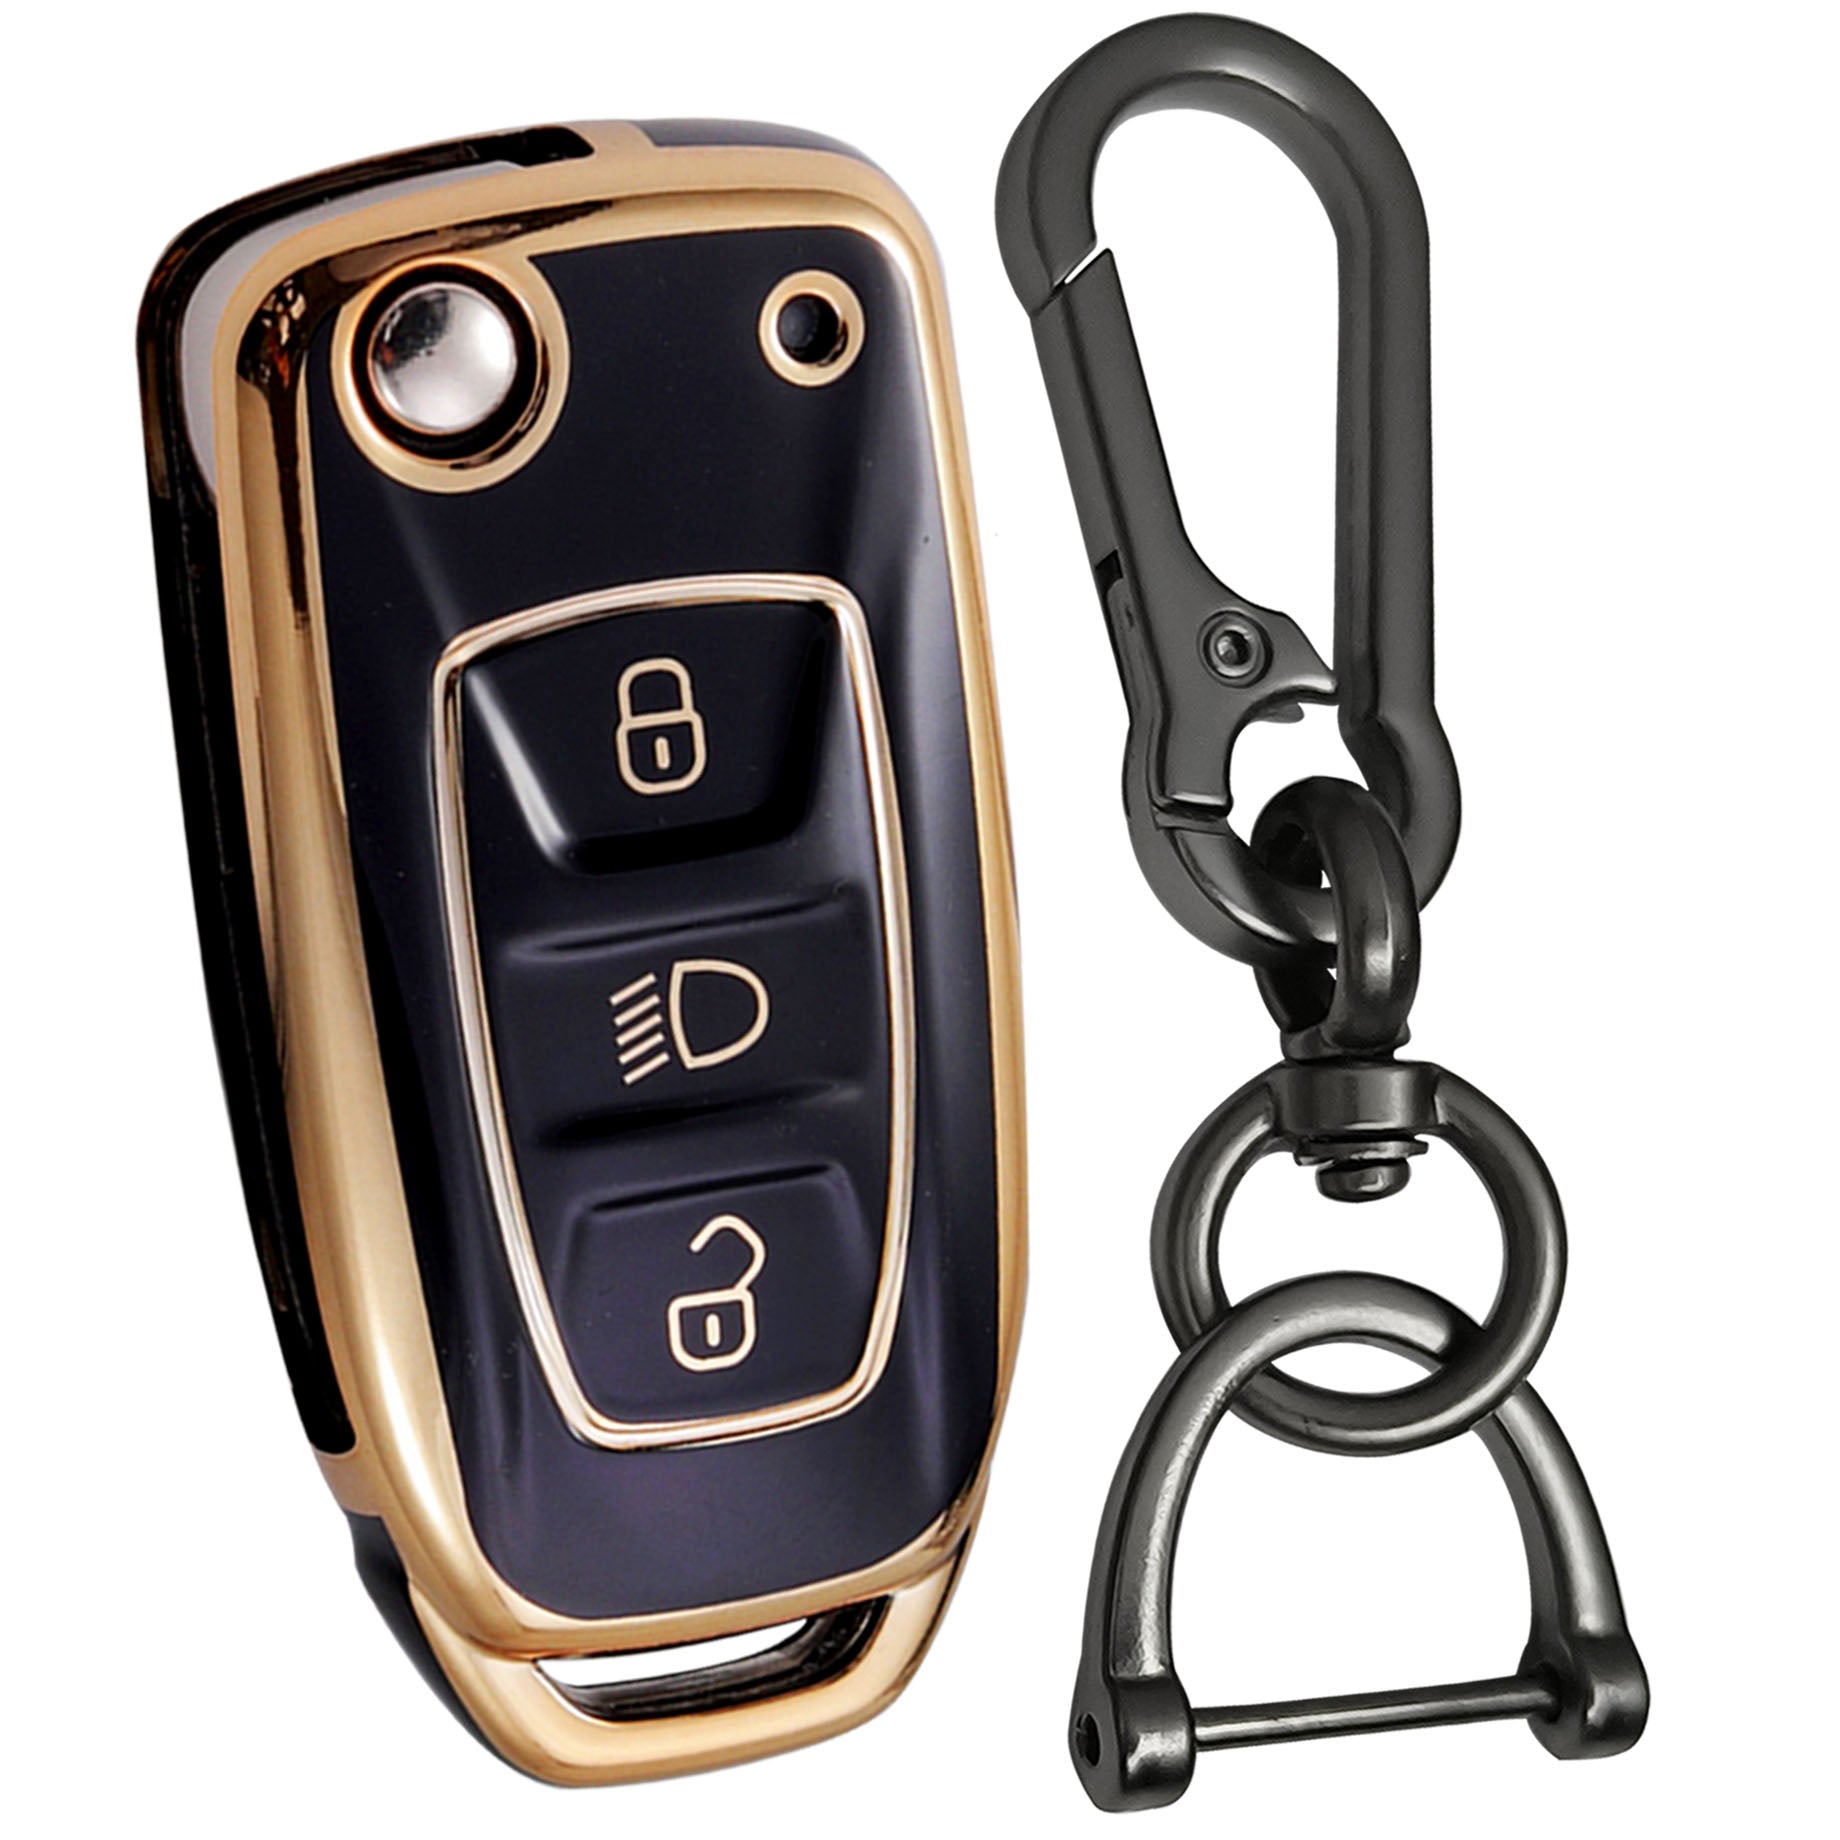 tata zest nexon hexa tiago 3b flip tpu black gold car key cover case accessories keychain